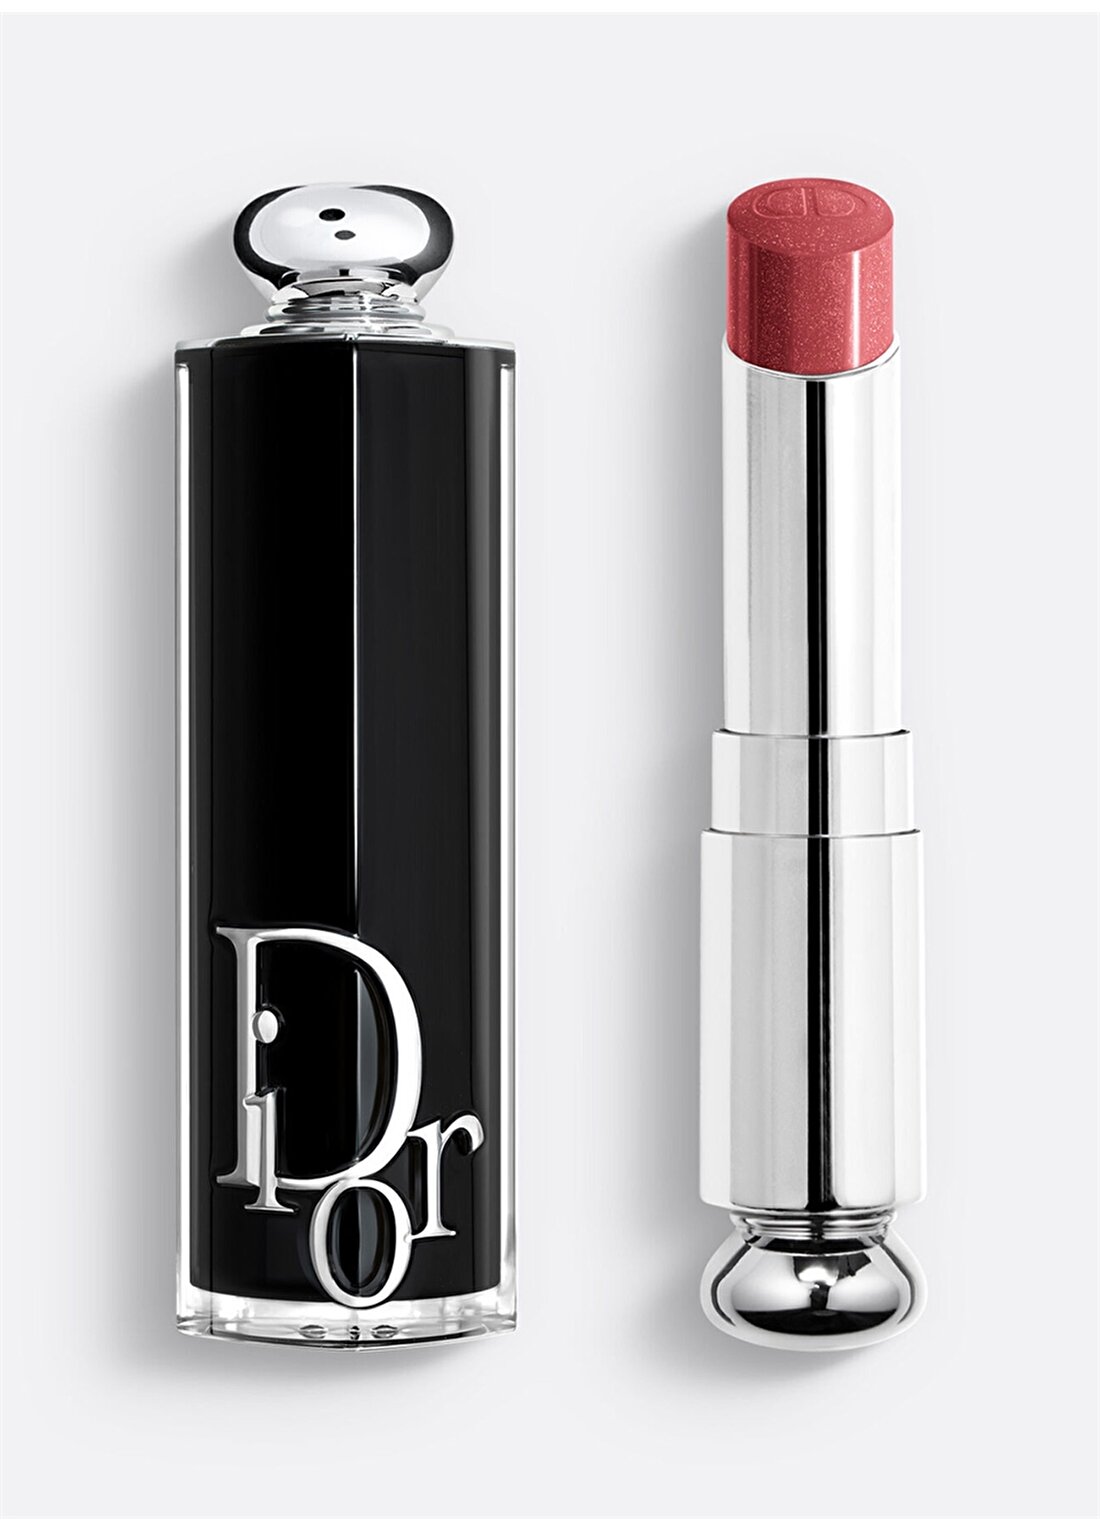 Dior Addict Parlak Ruj Lipstick 526